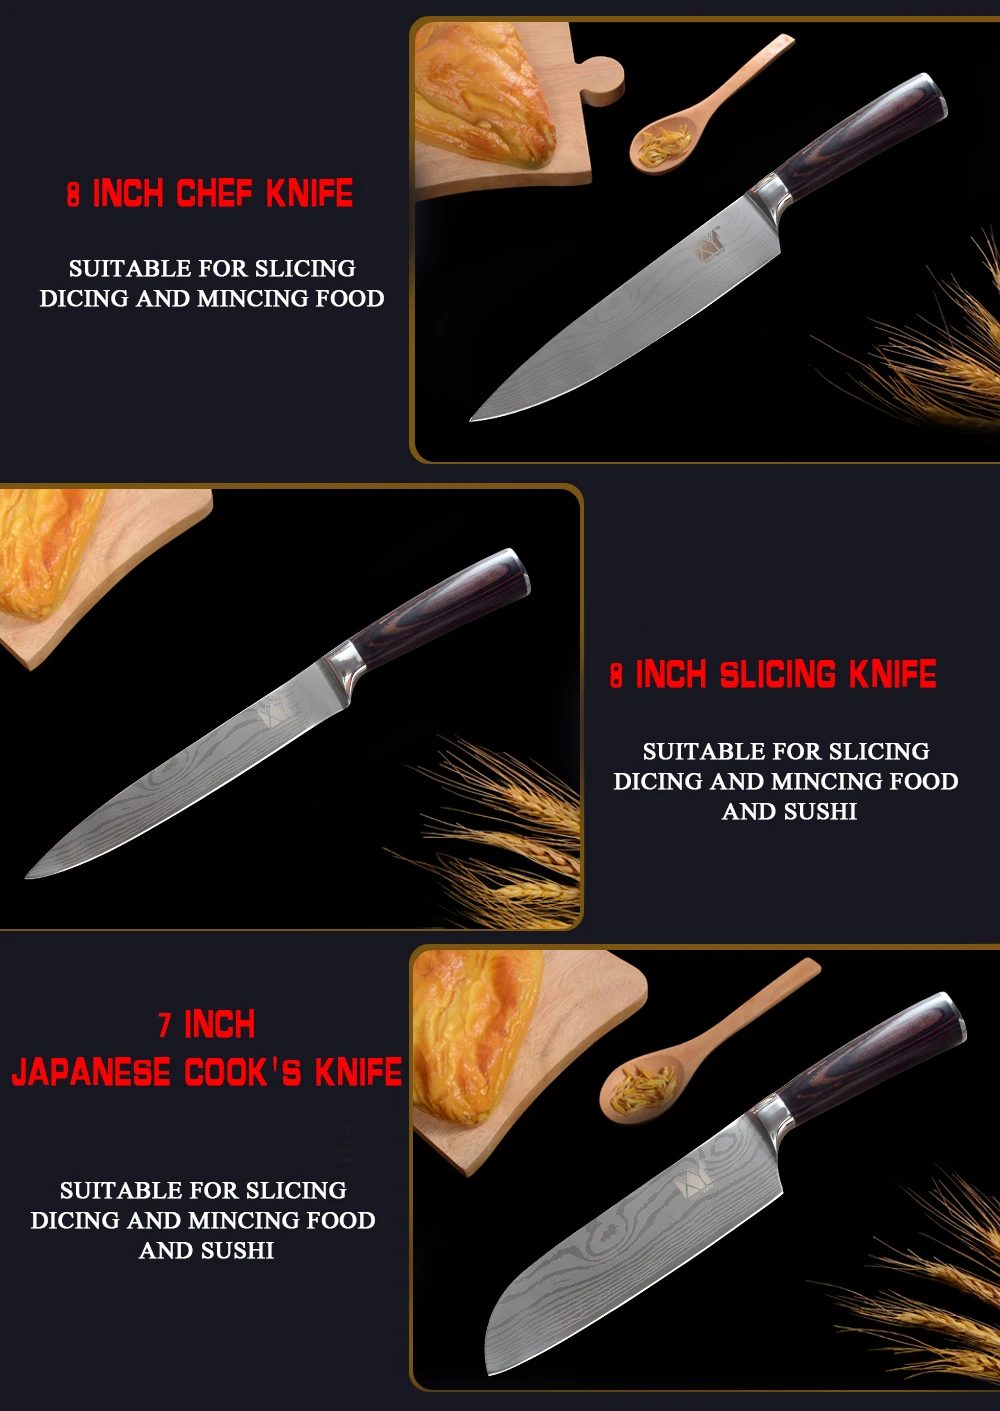 XYj набор кухонных ножей с ультратонким лезвием 3,5~ 8 дюймов, набор кухонных ножей Santoku Chef, набор кухонных ножей из 6 предметов, кухонный нож из нержавеющей стали